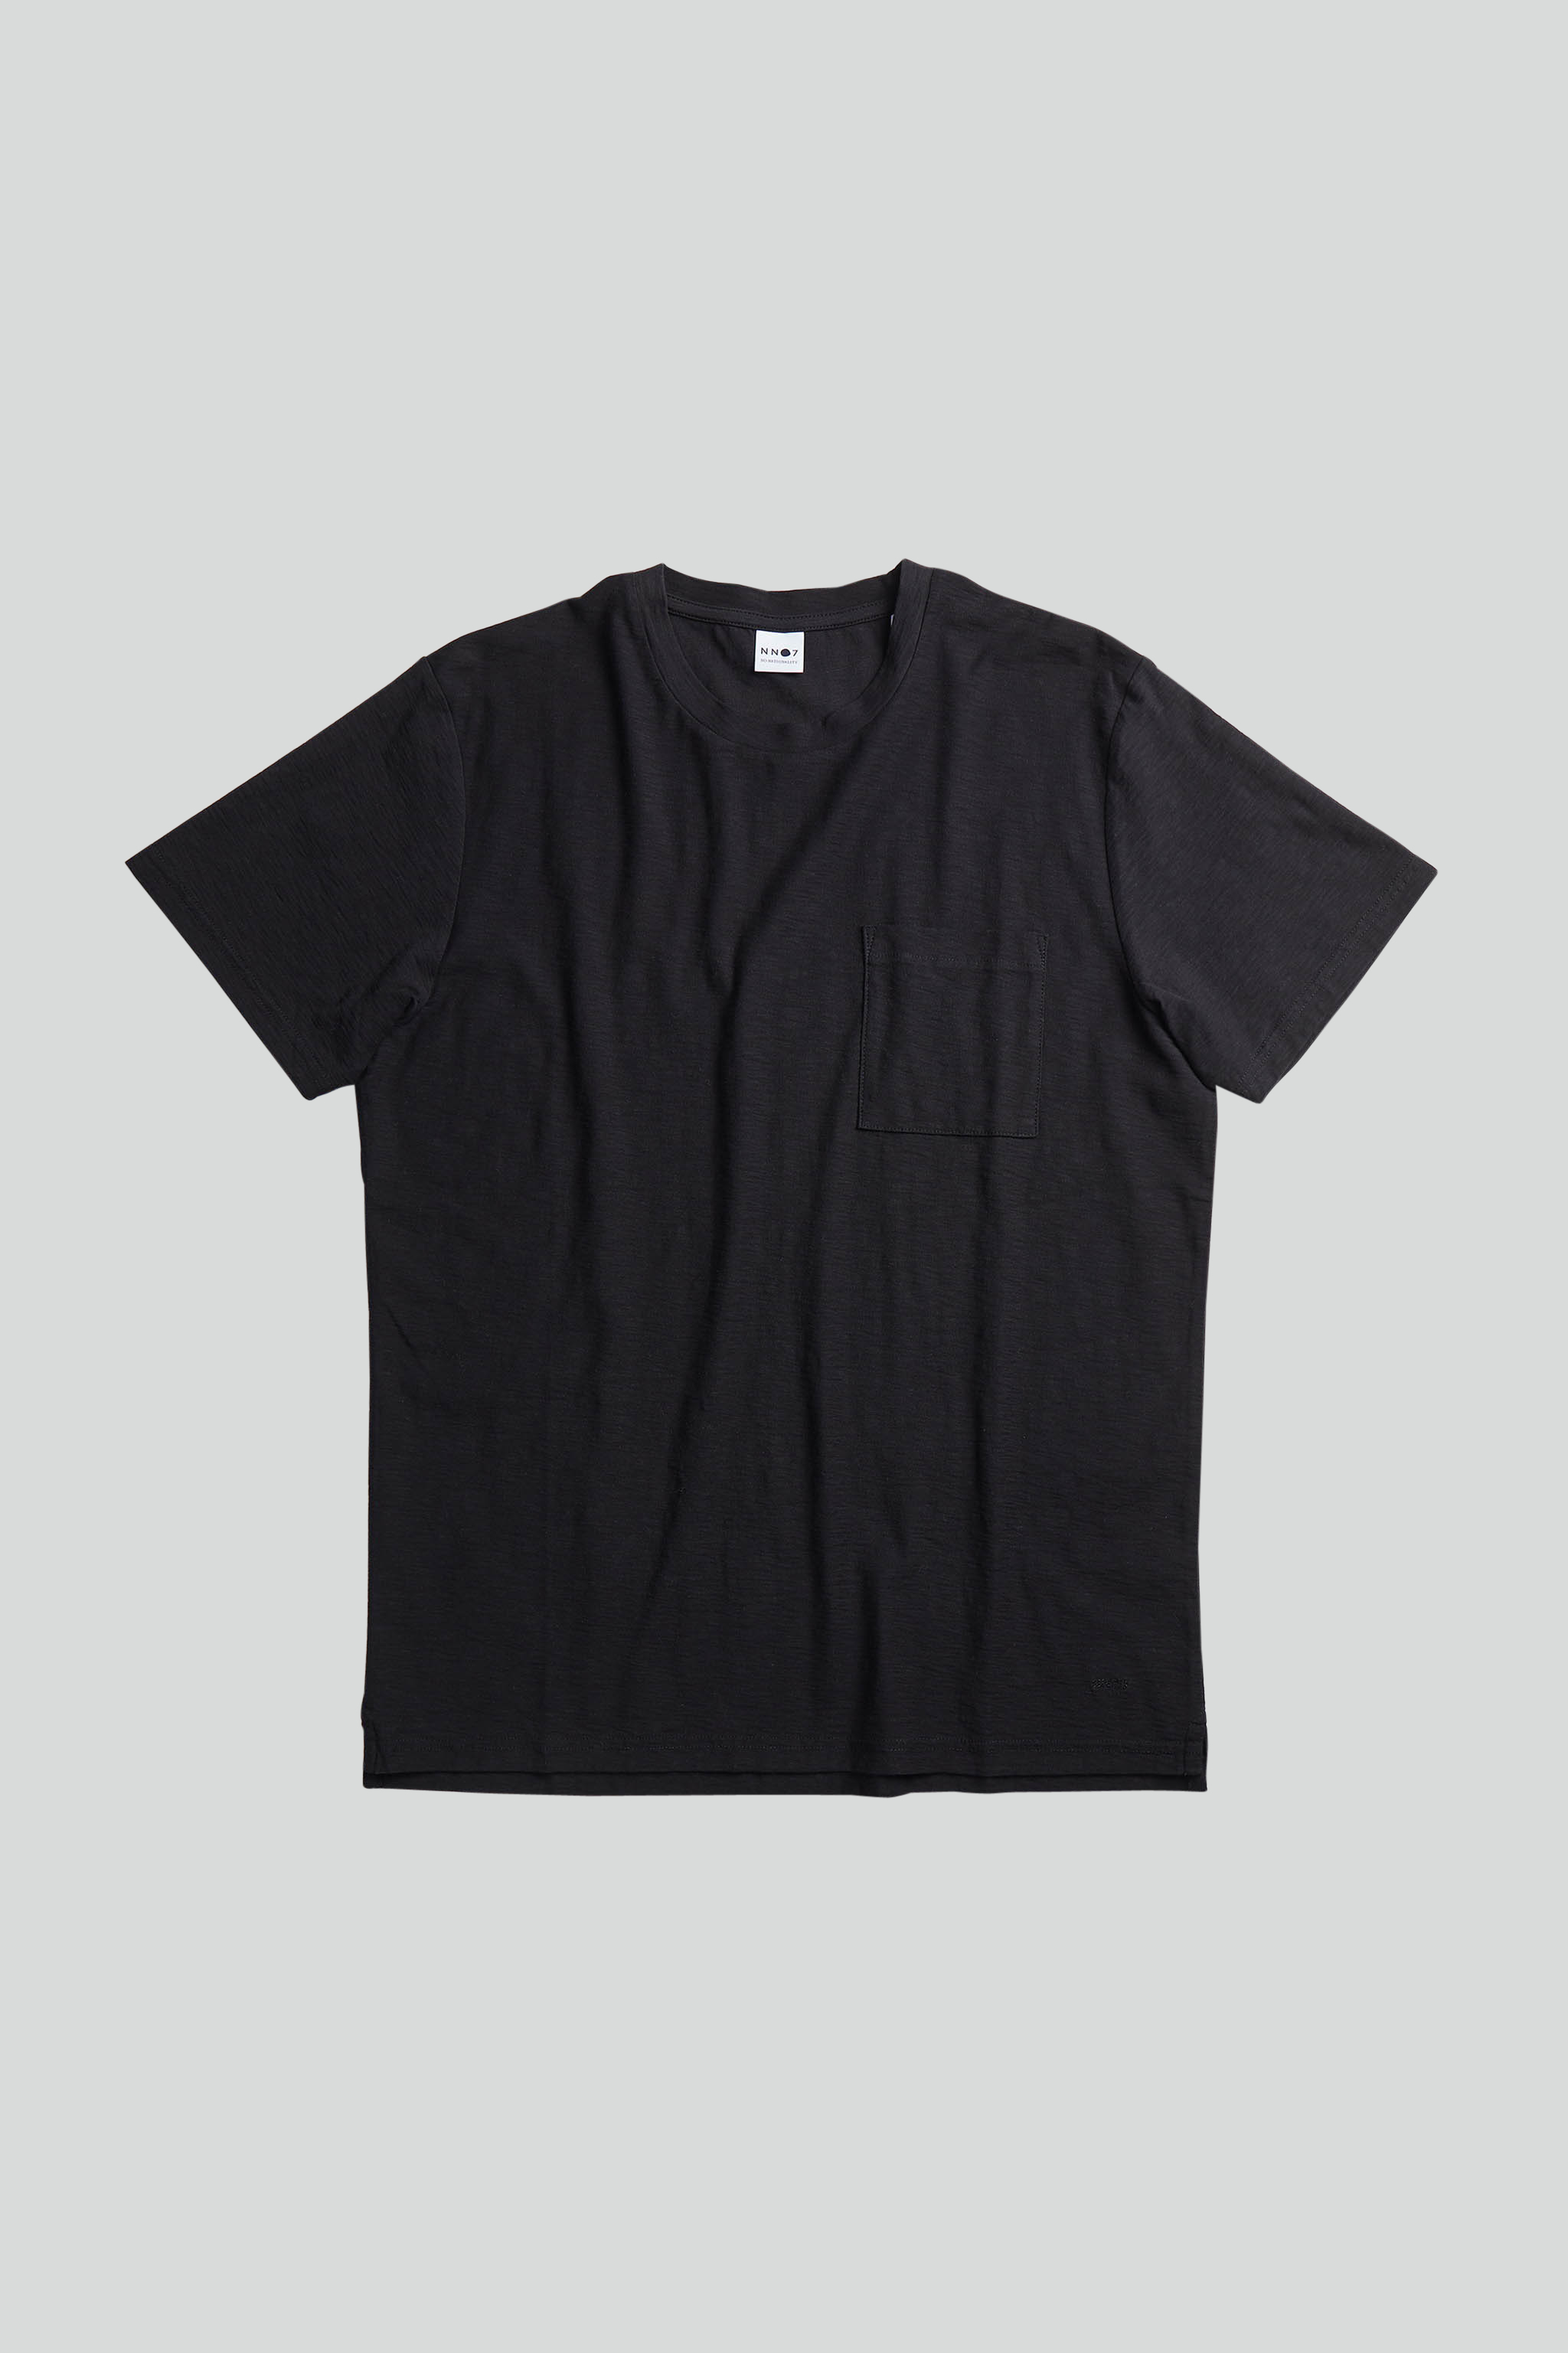 Aspen 3420 men's t-shirt - Black - Buy online at NN07®